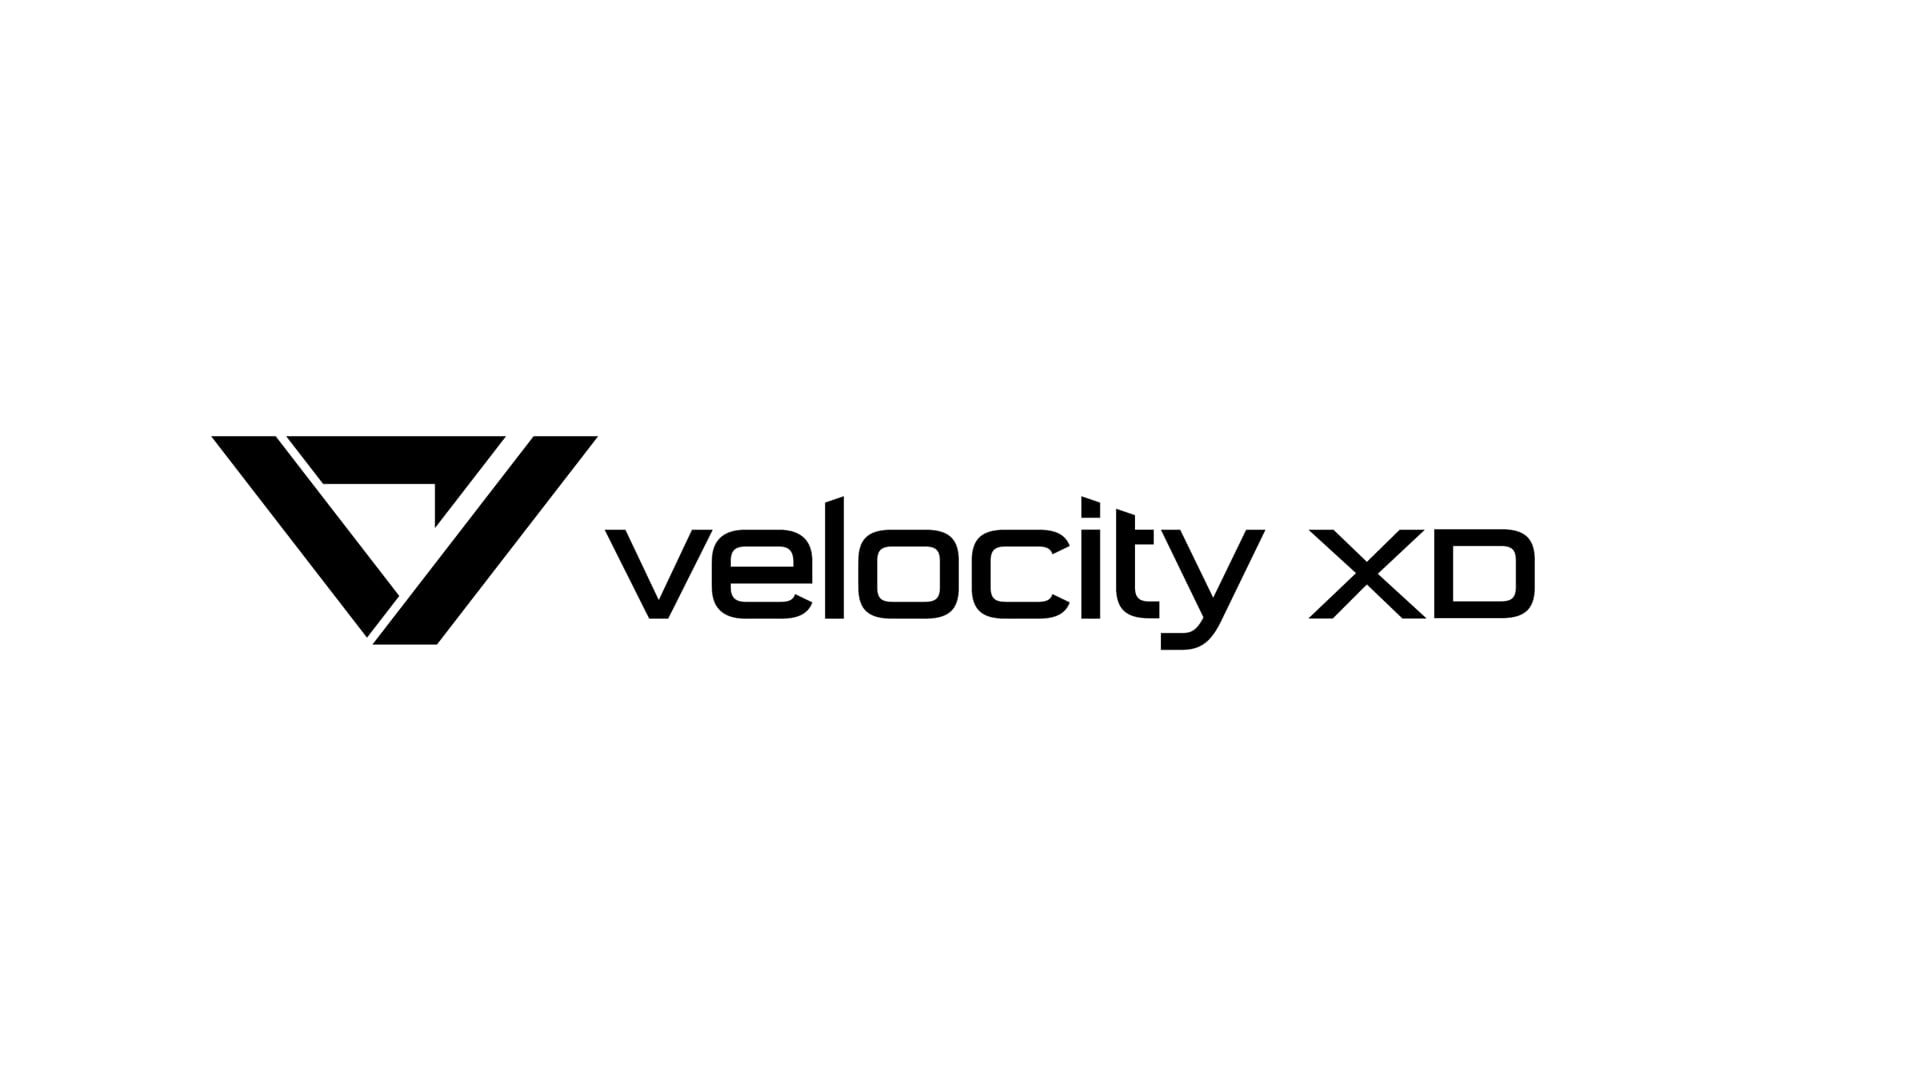 velocity XD